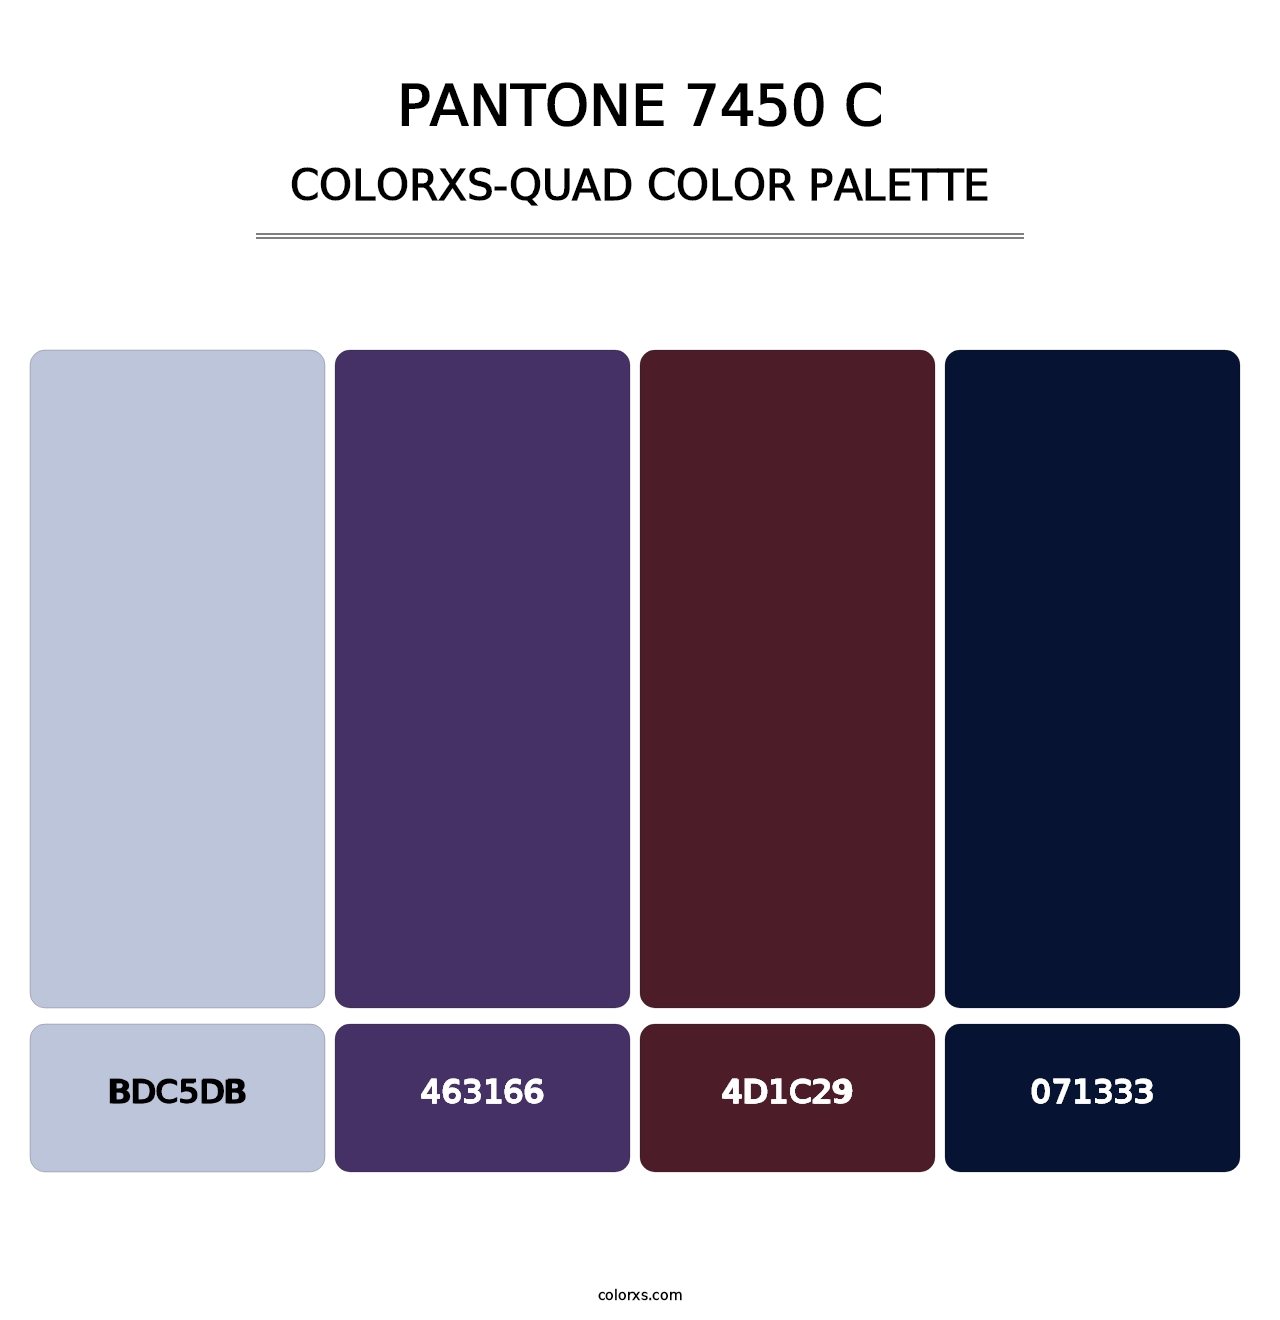 PANTONE 7450 C - Colorxs Quad Palette